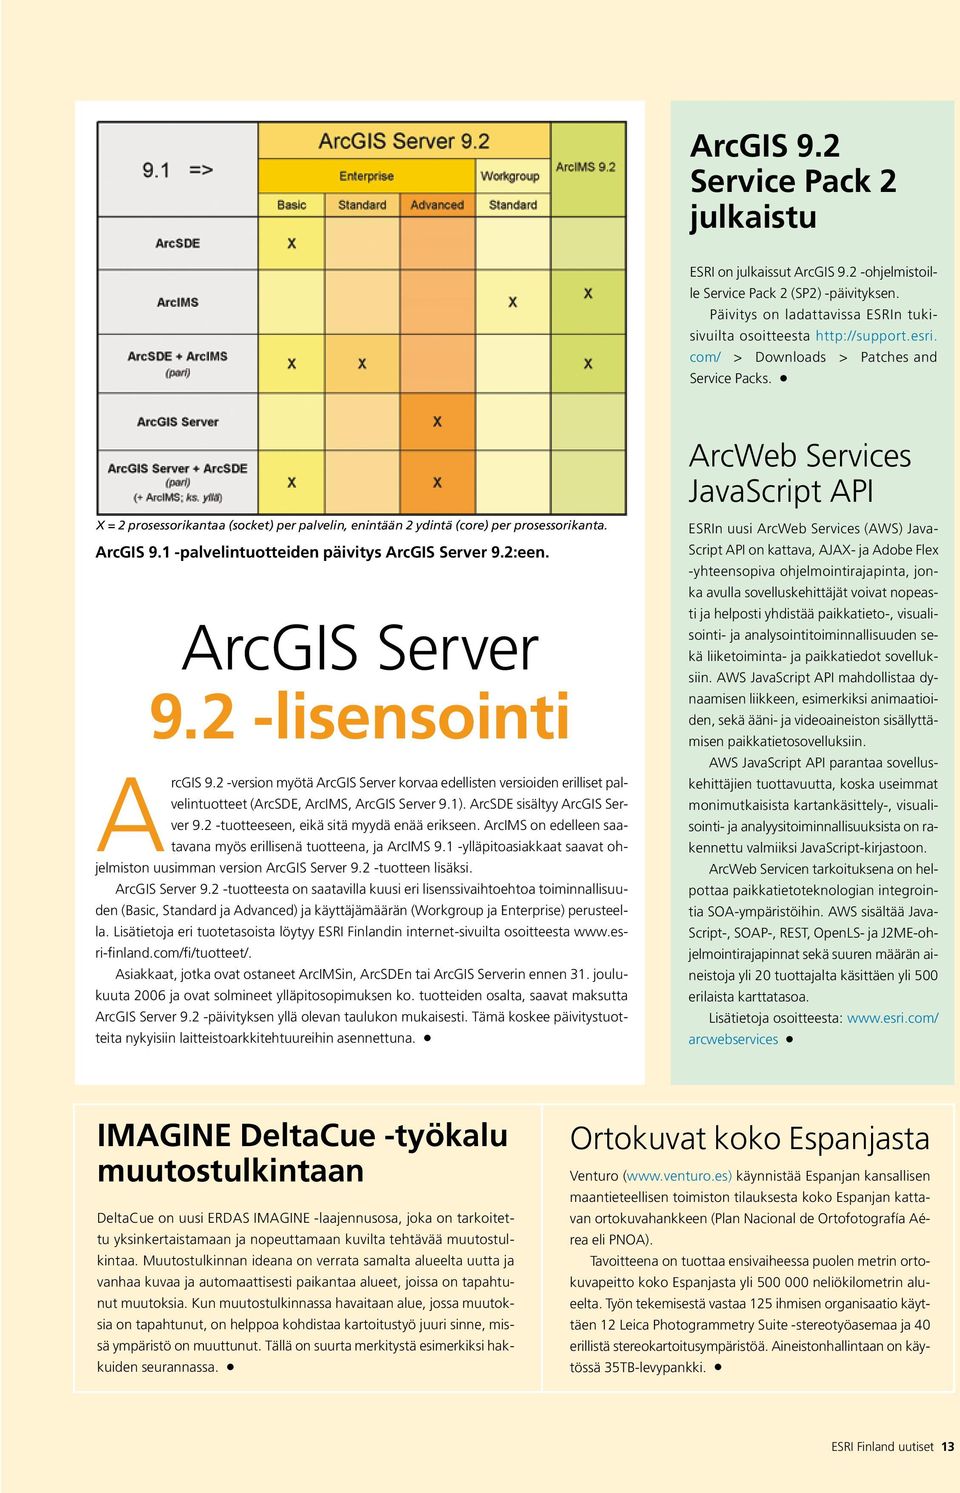 1 -palvelintuotteiden päivitys ArcGIS Server 9.2:een. ArcGIS Server 9.2 -lisensointi ArcGIS 9.